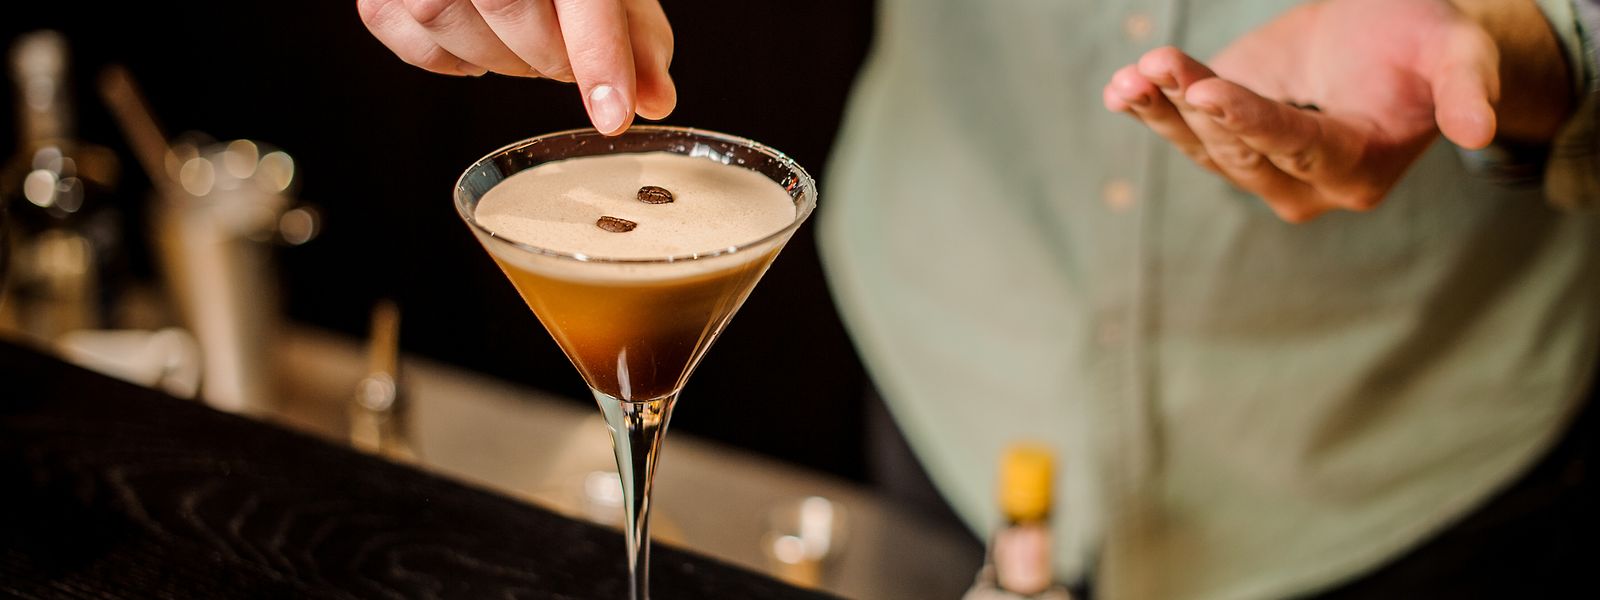 Dieser Cocktail macht zugleich blau und wach: der Espresso Martini.